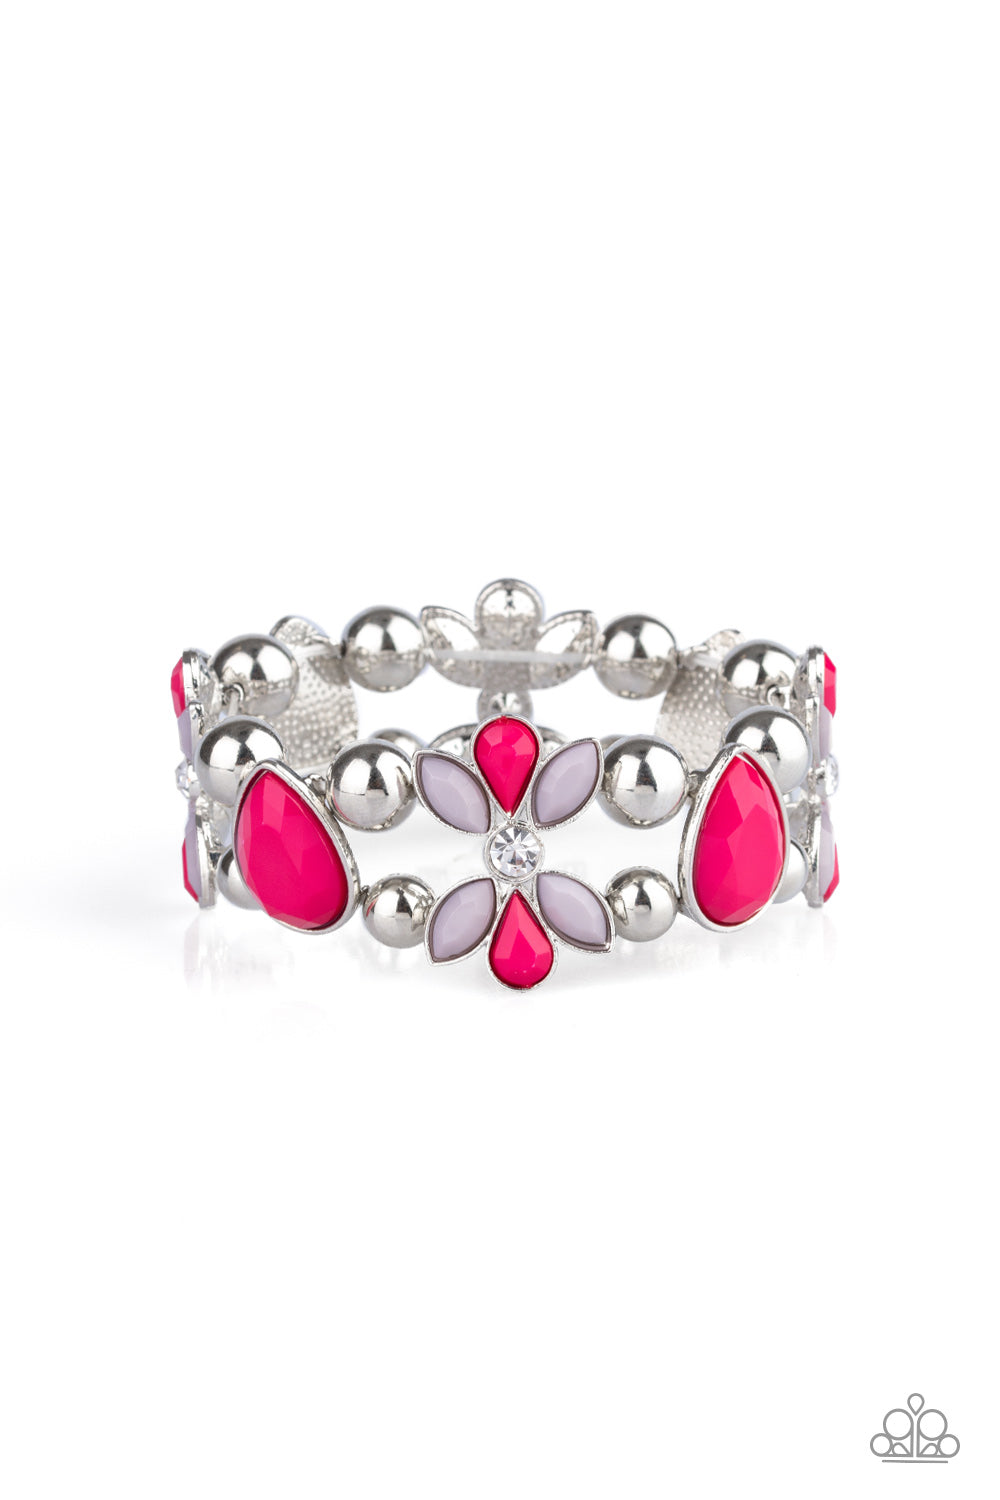 Fabulously Flourishing - Pink bracelet